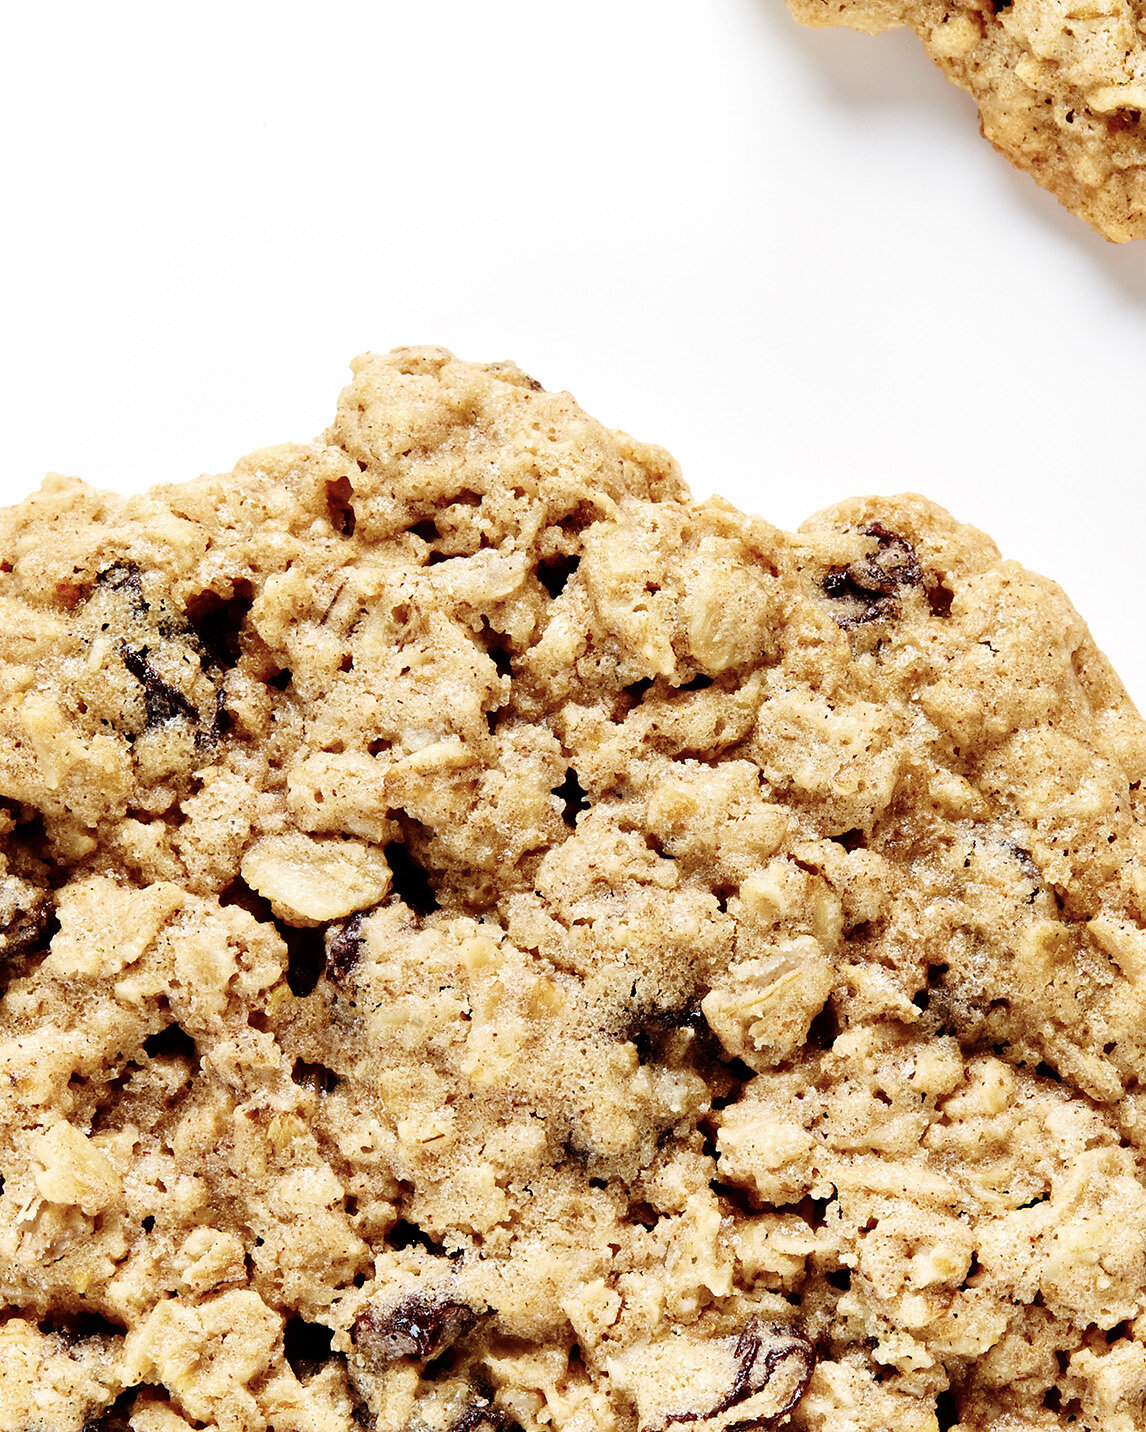 Best Raisin Filled Cookie Recipe : Golden Raisin Biscuit Cookies King Arthur Baking - Raisin ...